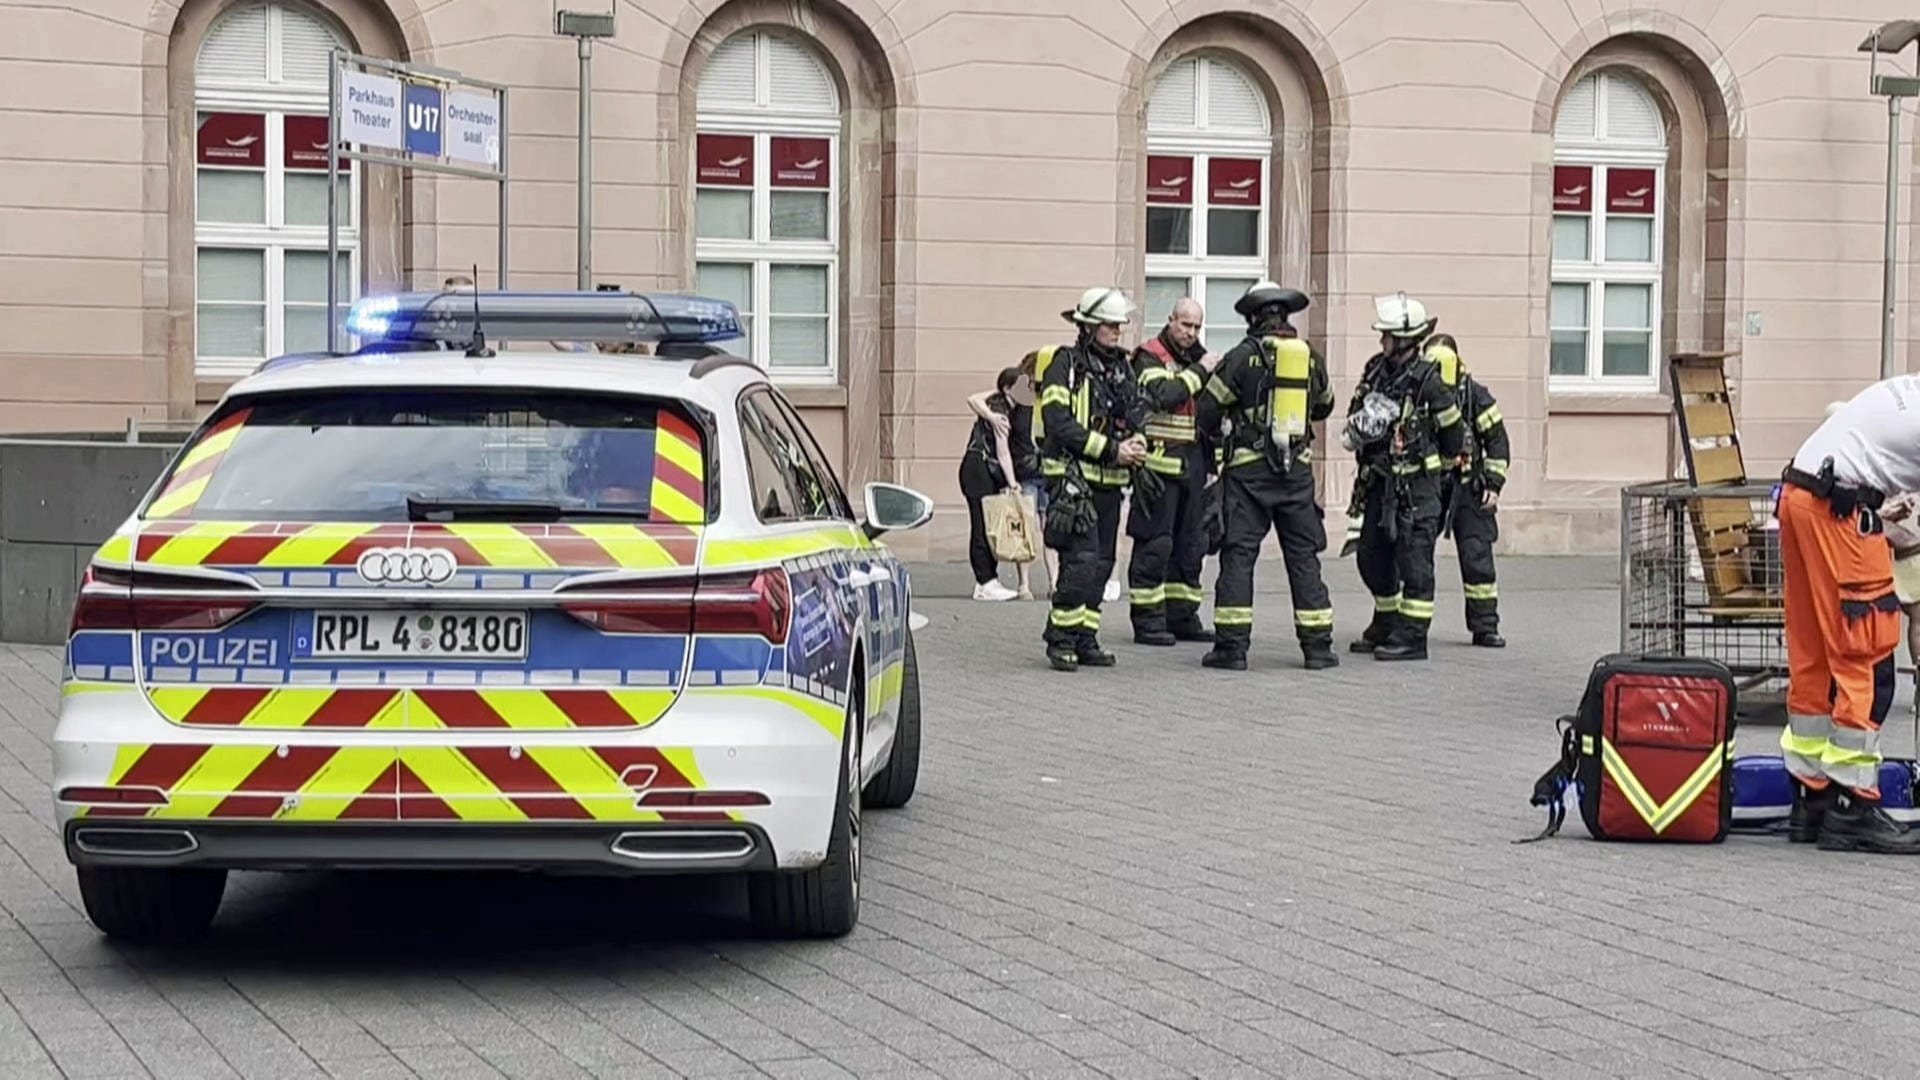 Fünf Verletzte bei mutmaßlicher Reizgas-Attacke in Tiefgarage in Mainz 